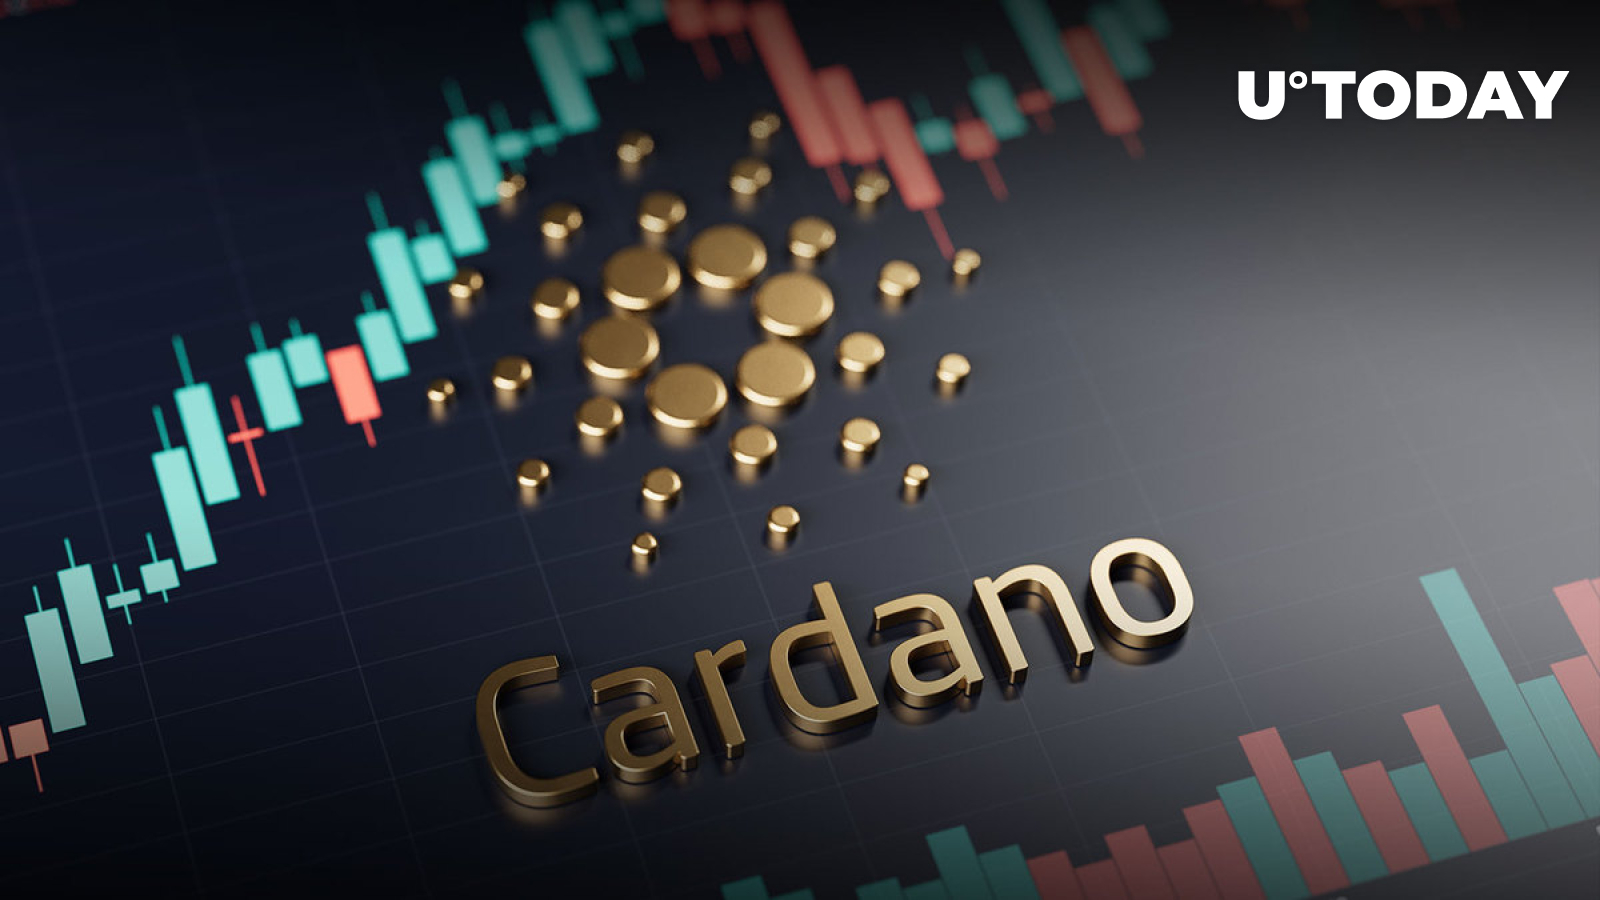 Cardano (ADA) 52٪ MTD افزایش یافت، در اینجا دو عامل حیاتی وجود دارد که باعث افزایش قیمت شده است.